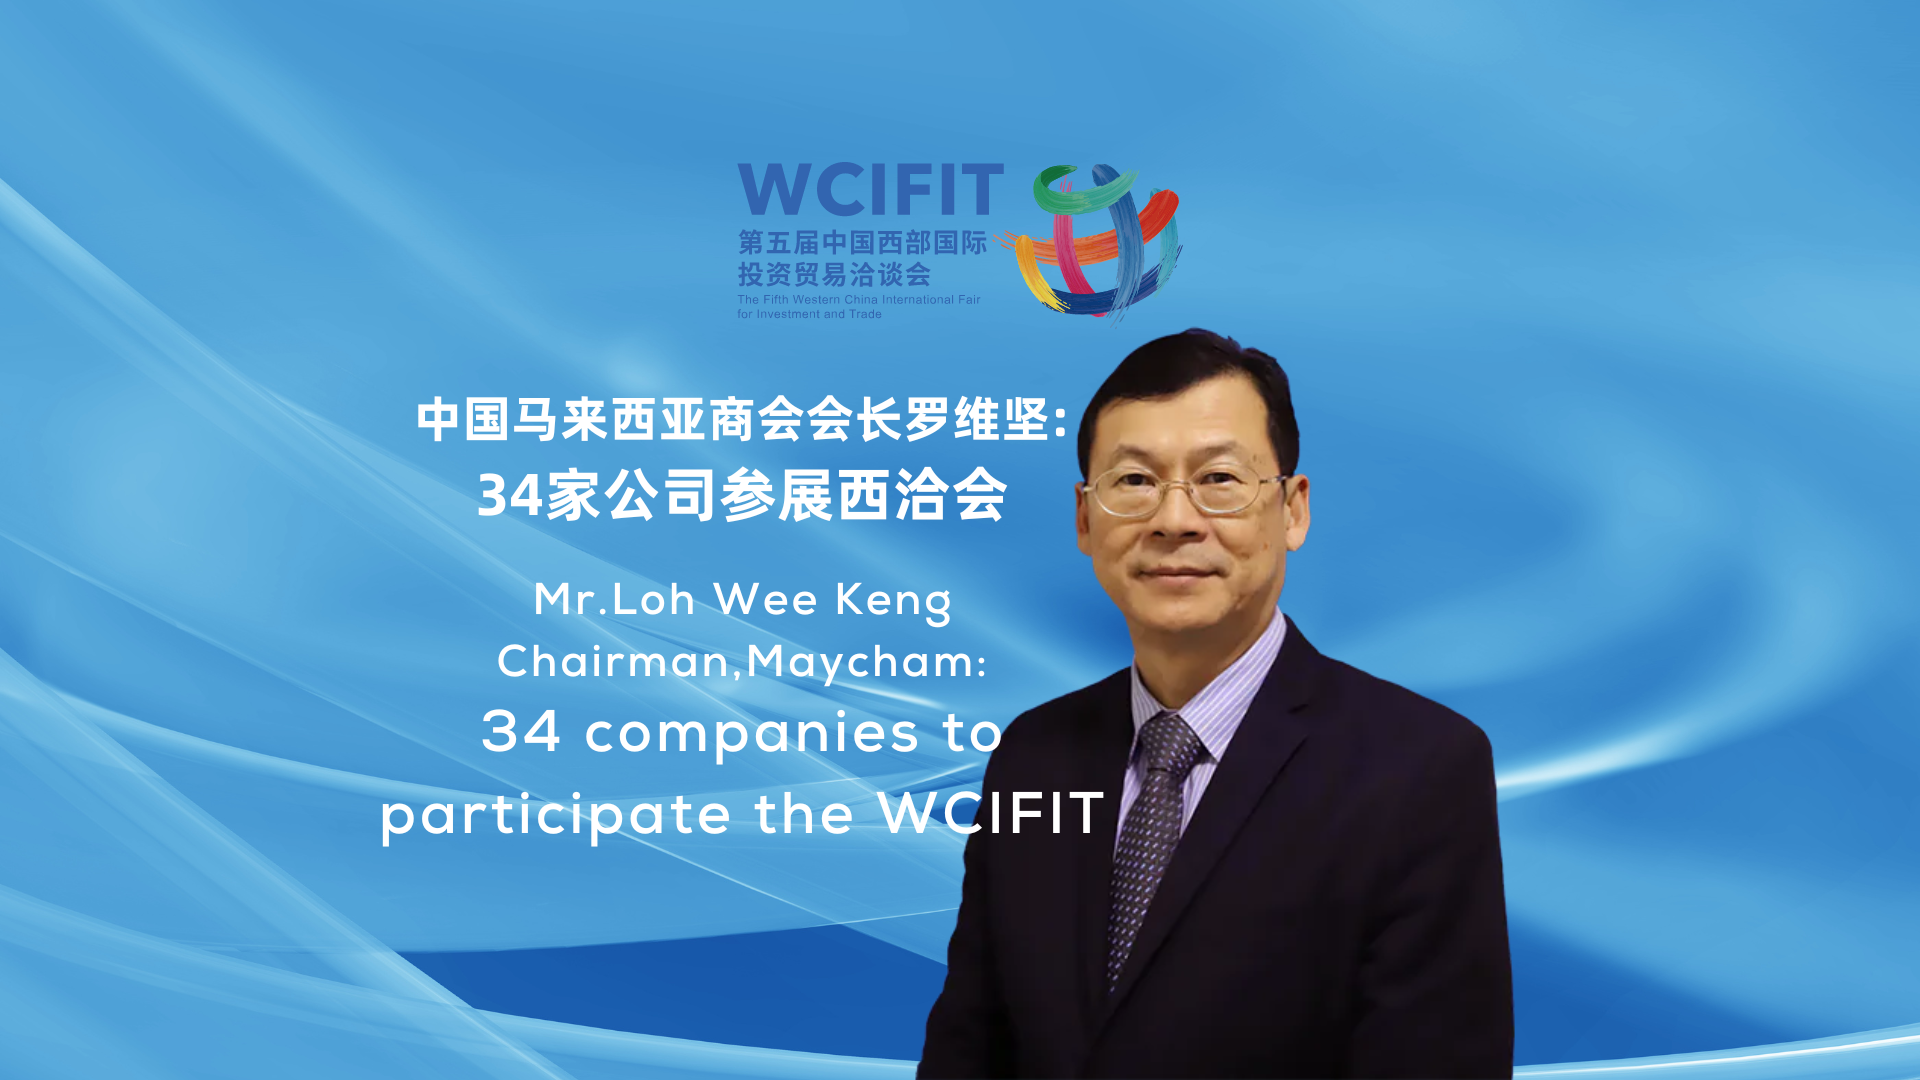 马来西亚准备在 WCIFIT 上强调其产品和投资机会